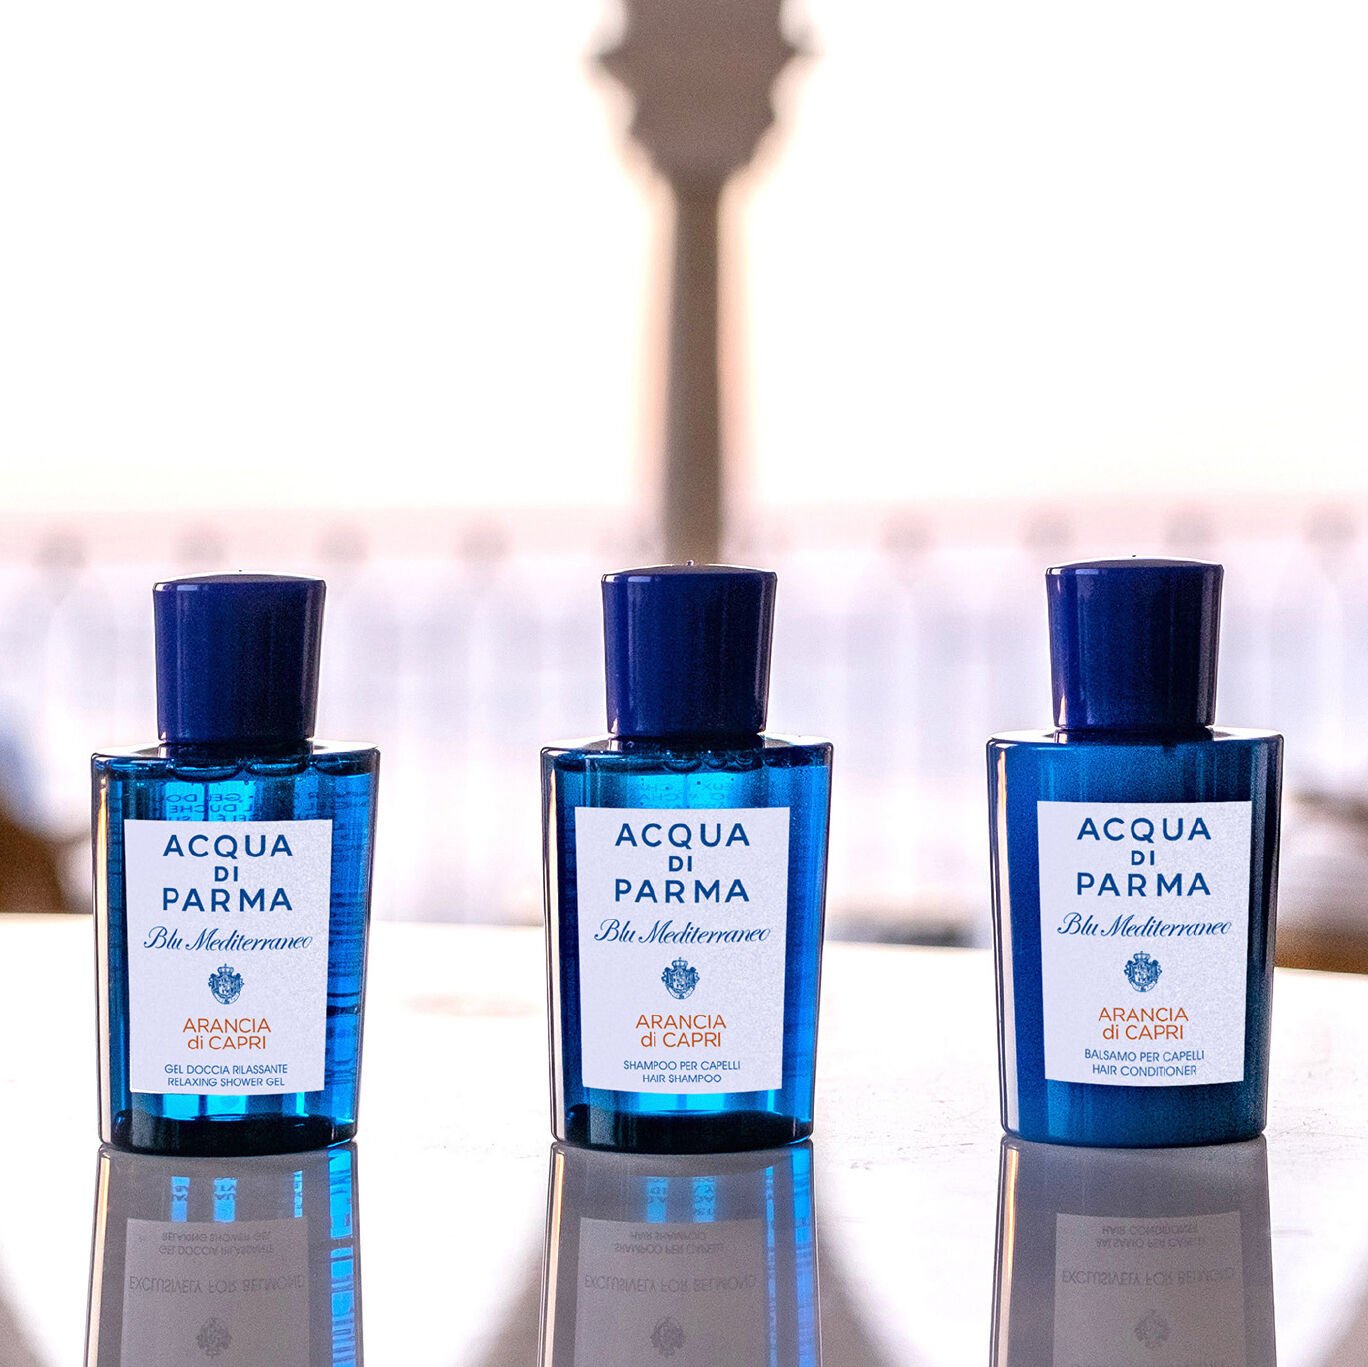 Acqua Di Parma Perfumes & Colognes, Hiland Beauty